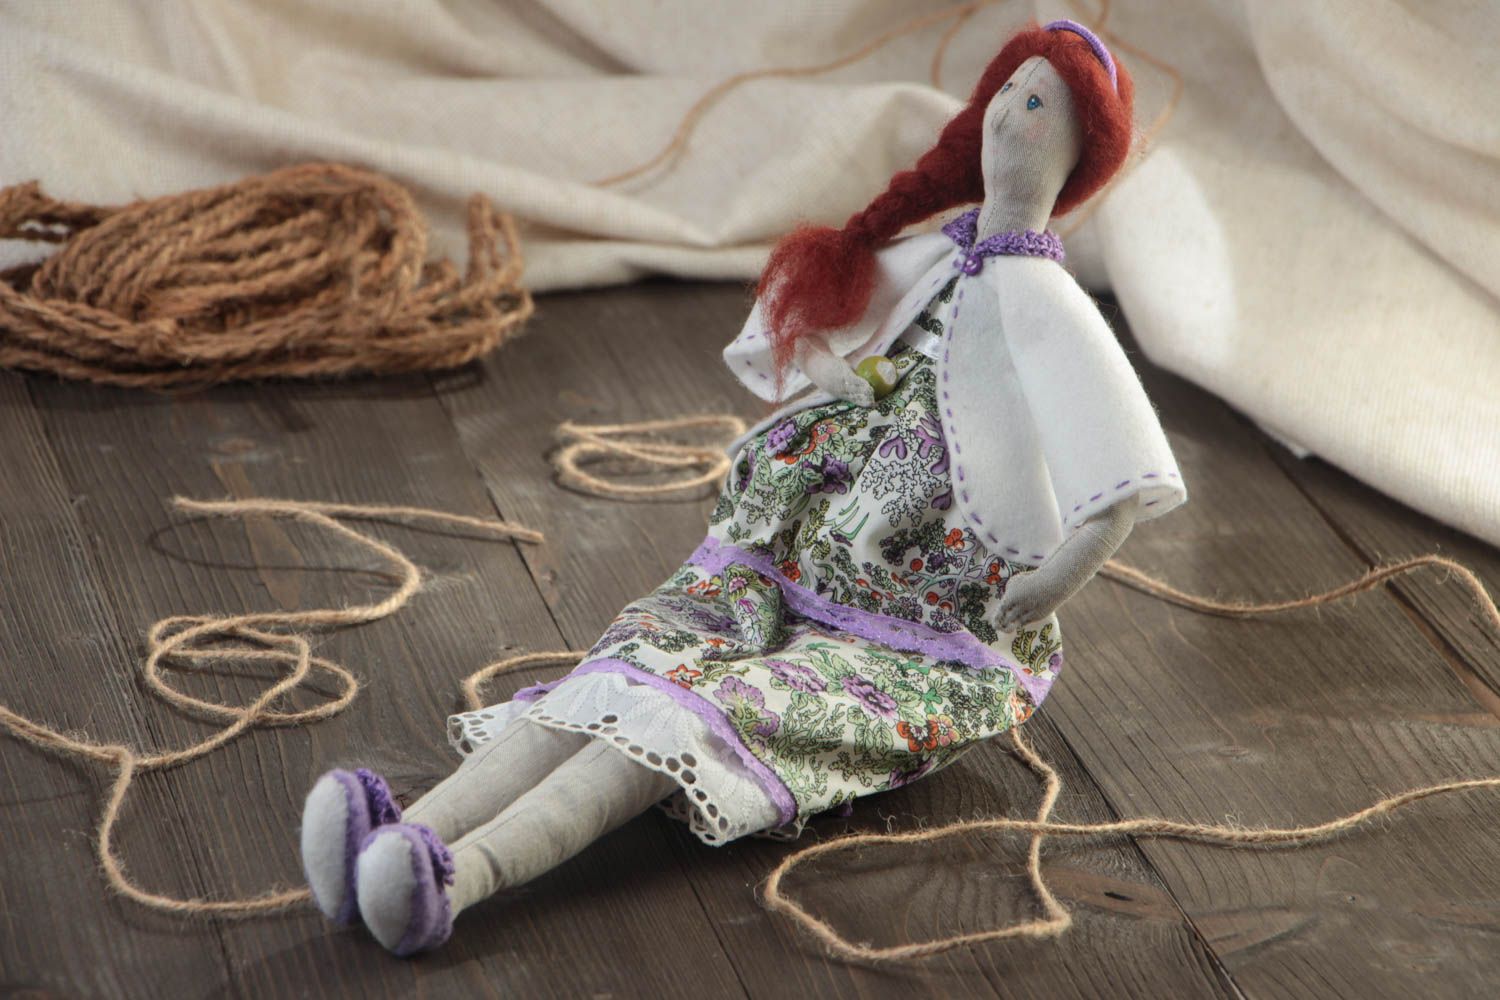 Авторская тканевая кукла из хлопка и льна ручной работы интерьерная красивая фото 1